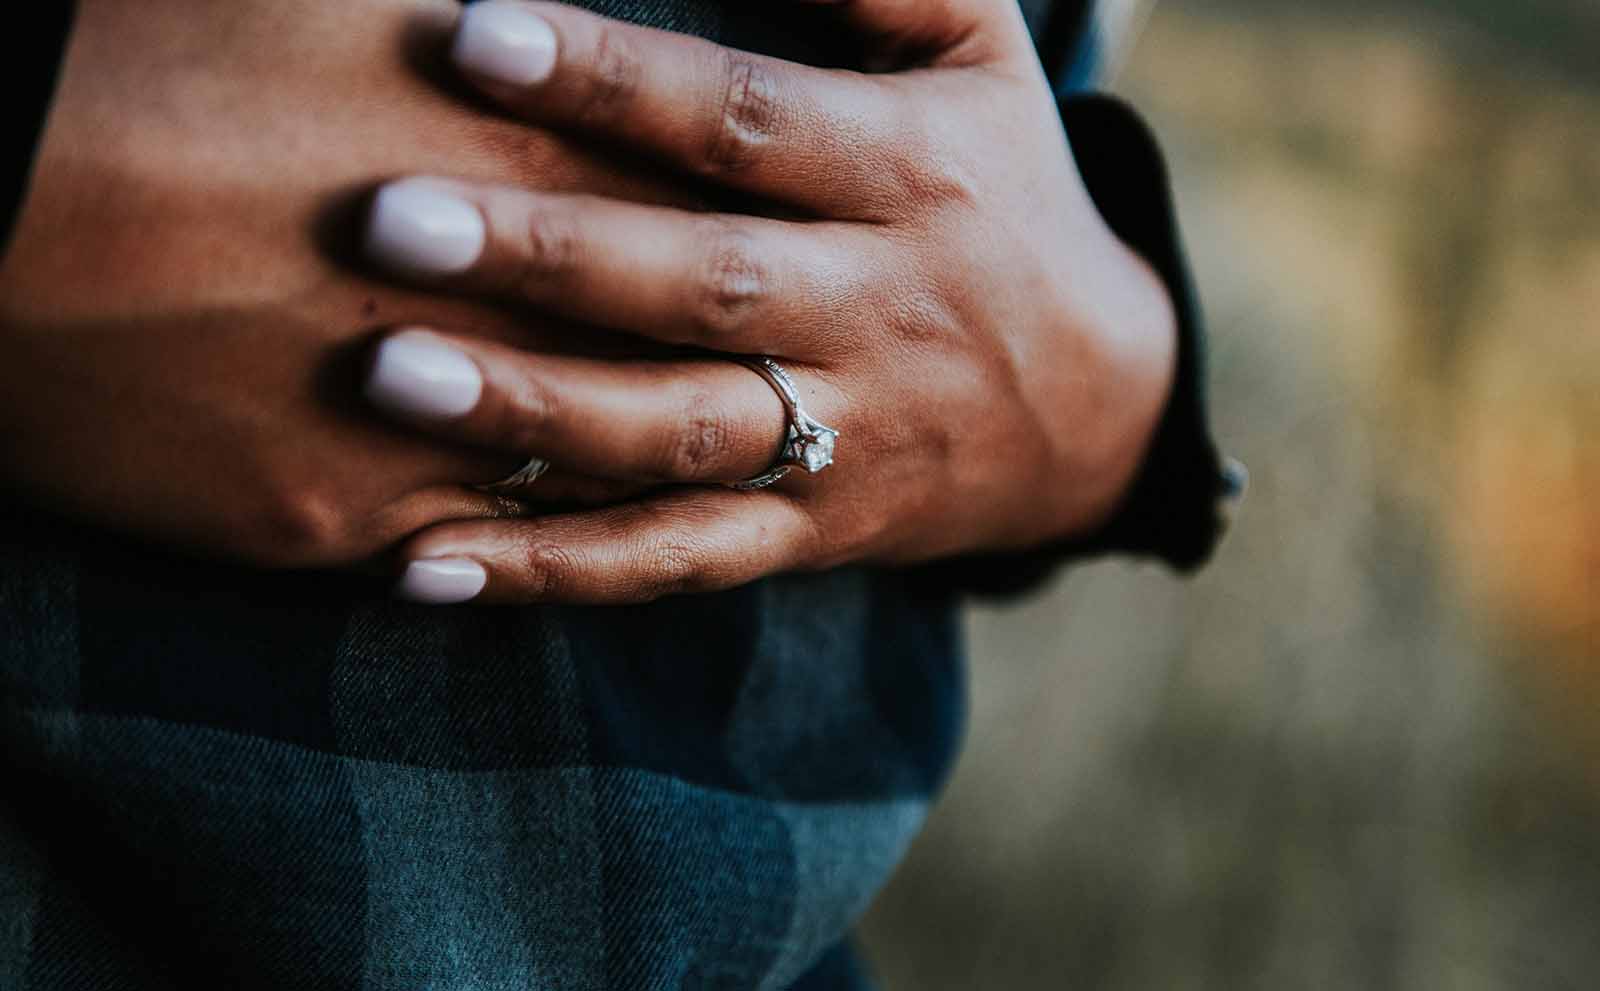 Engagement Ring on finger